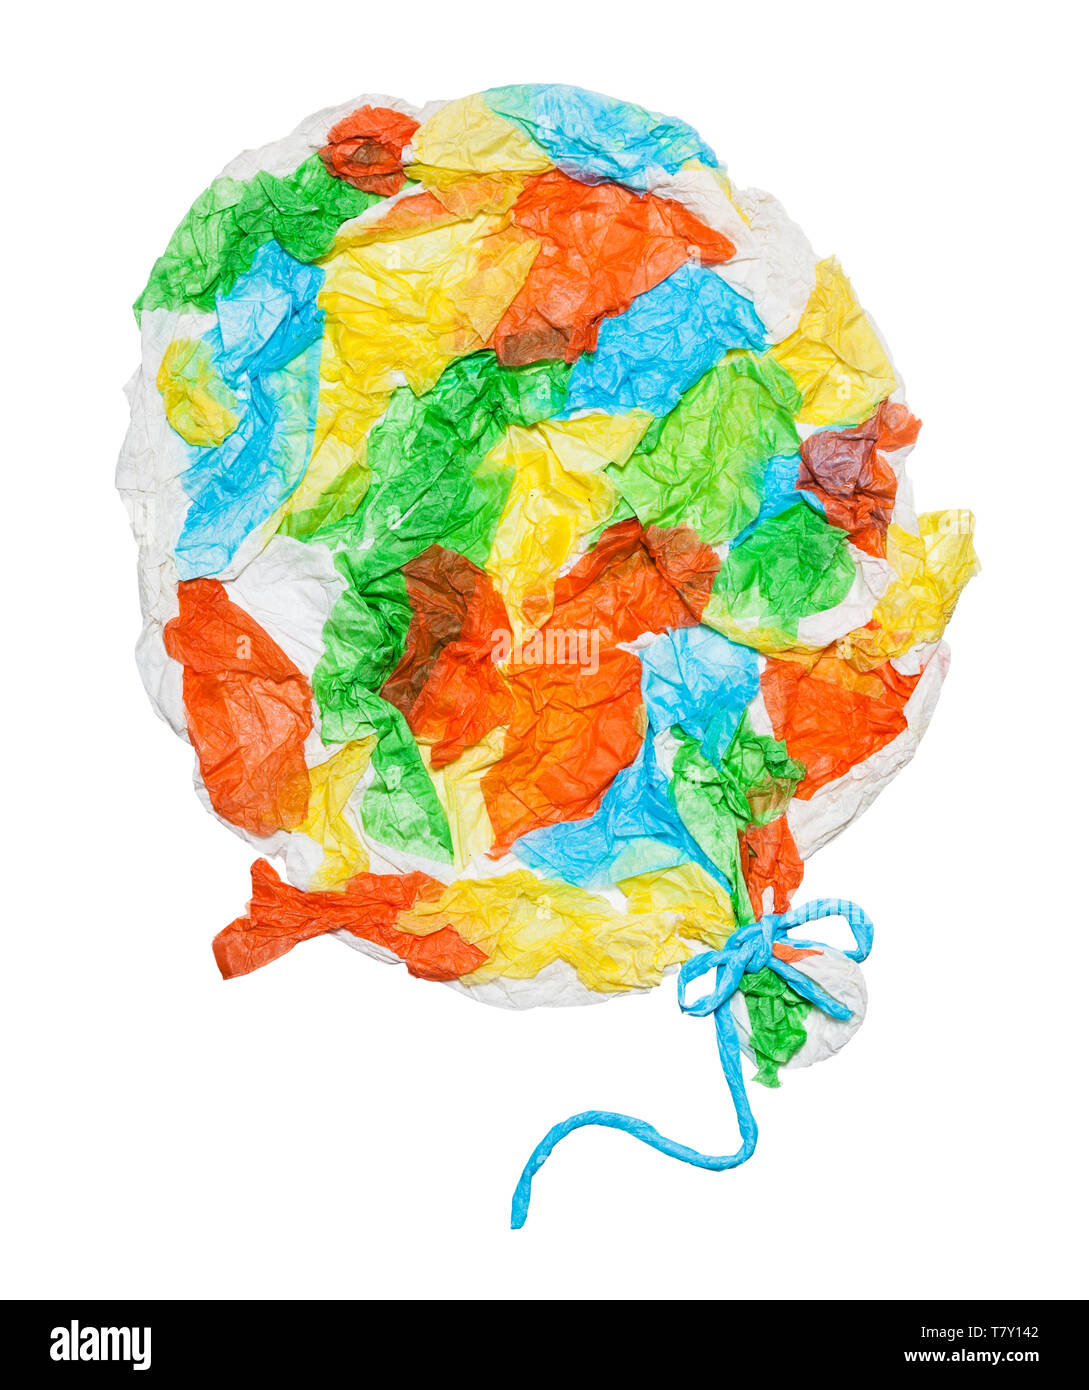 Balloon collé à partir de morceaux de papier froissé isolé sur fond blanc Banque D'Images